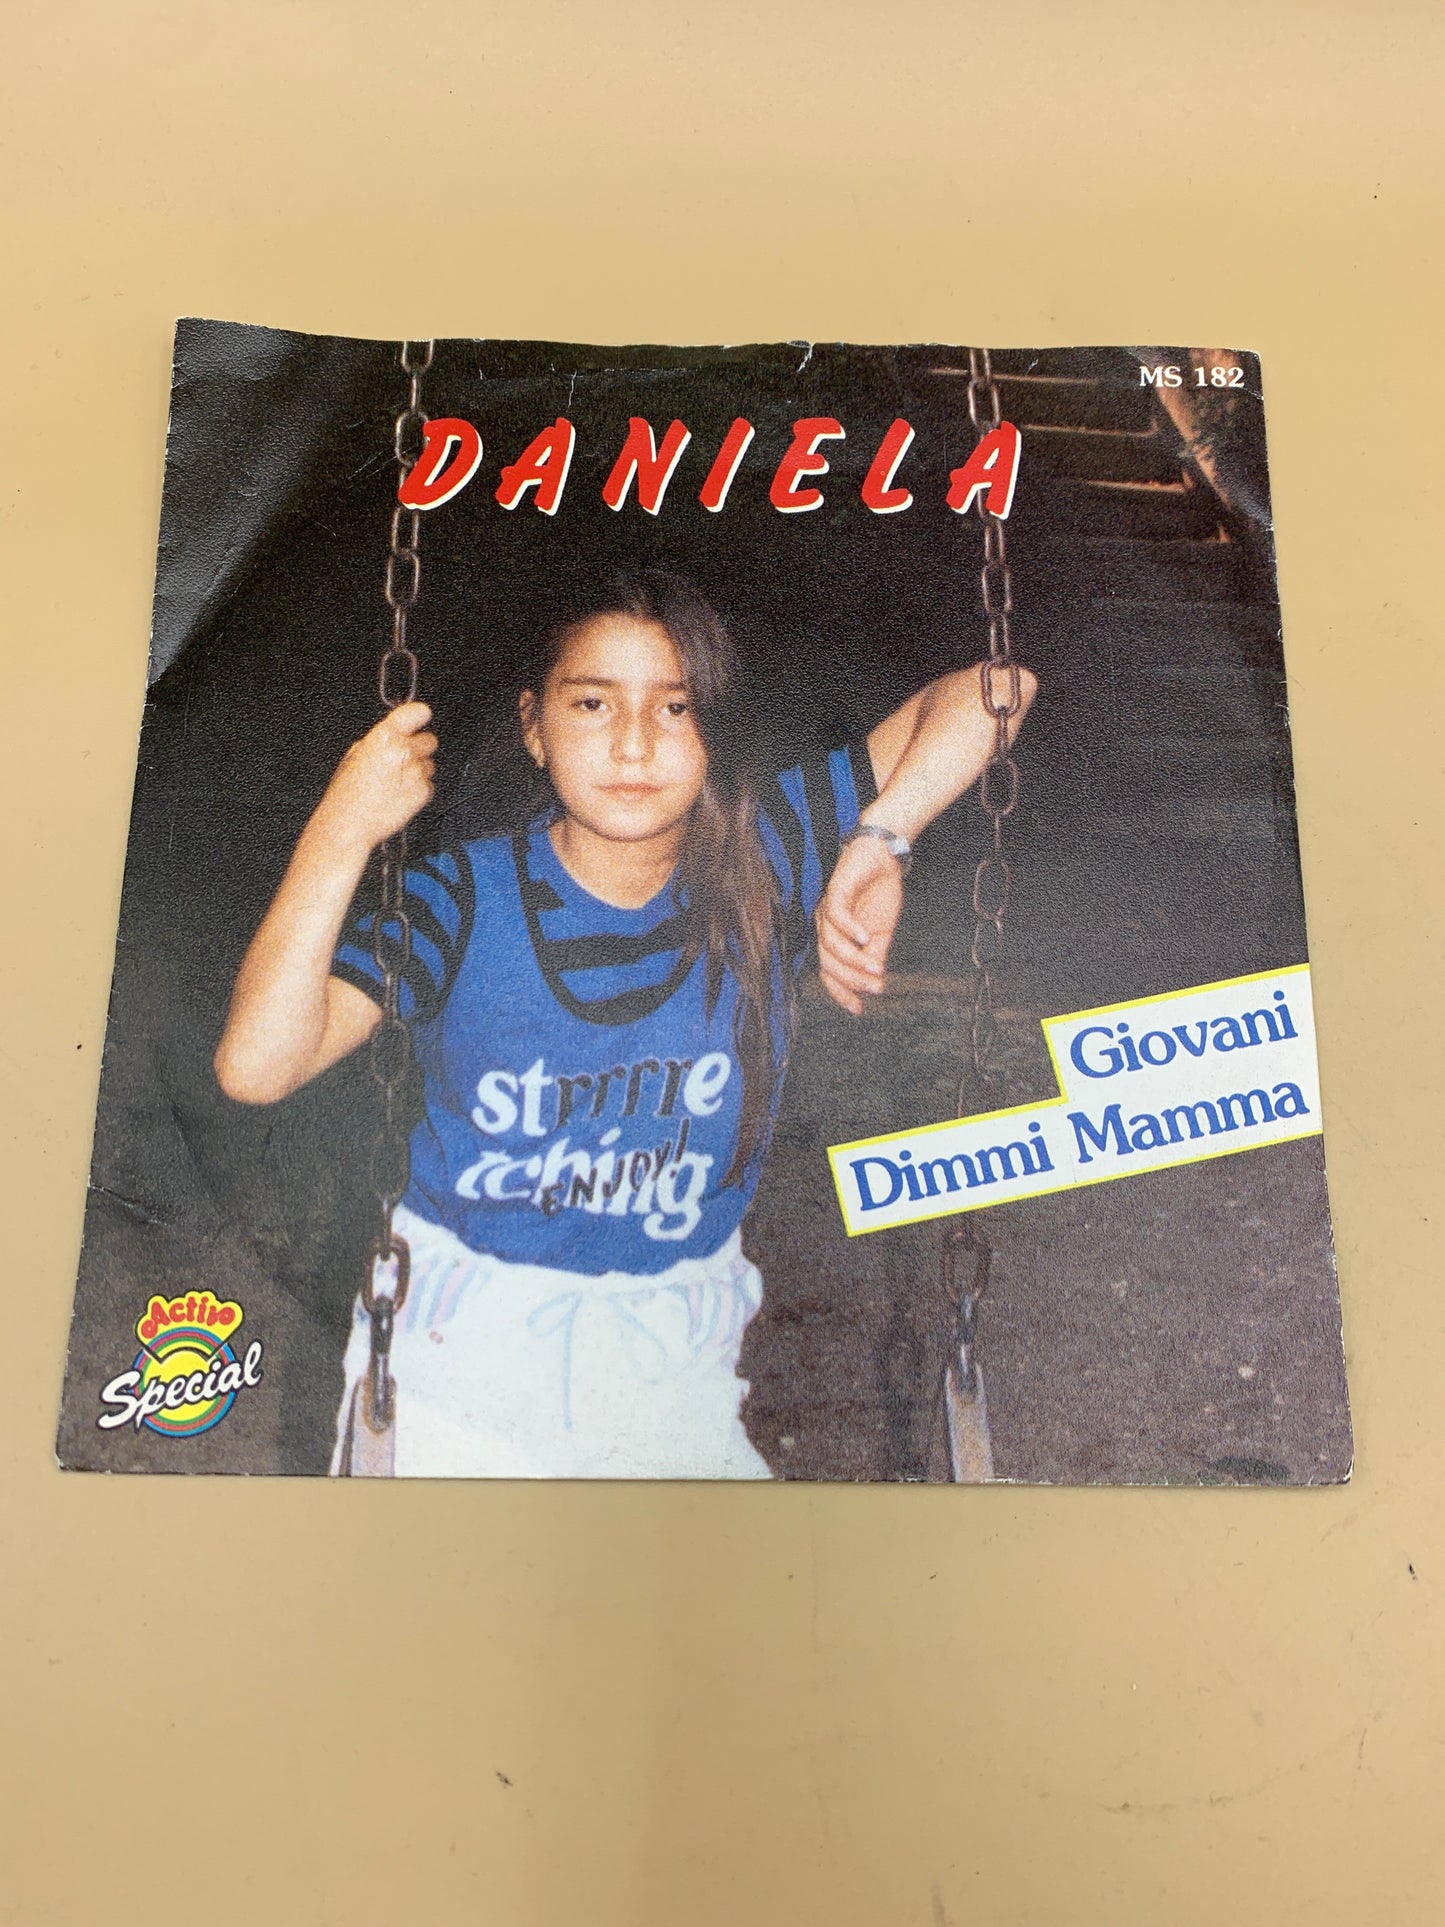 Daniela - Giovani - Dimmi mamma - disco vinile 45 giri